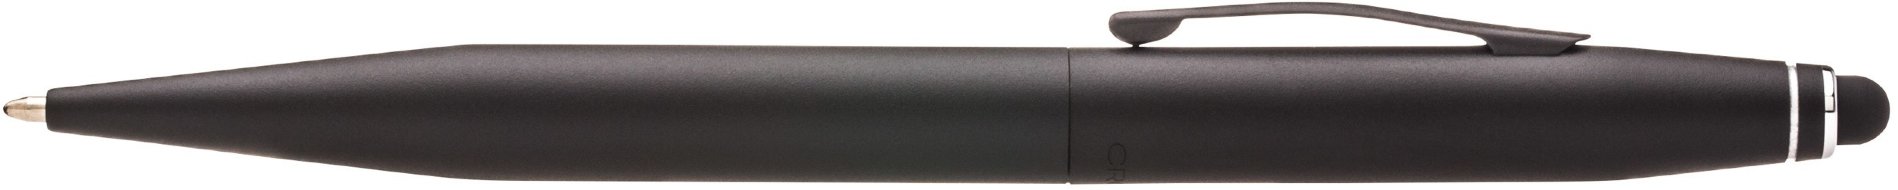 Шариковая ручка со стилусом Cross Tech2, Satin Black